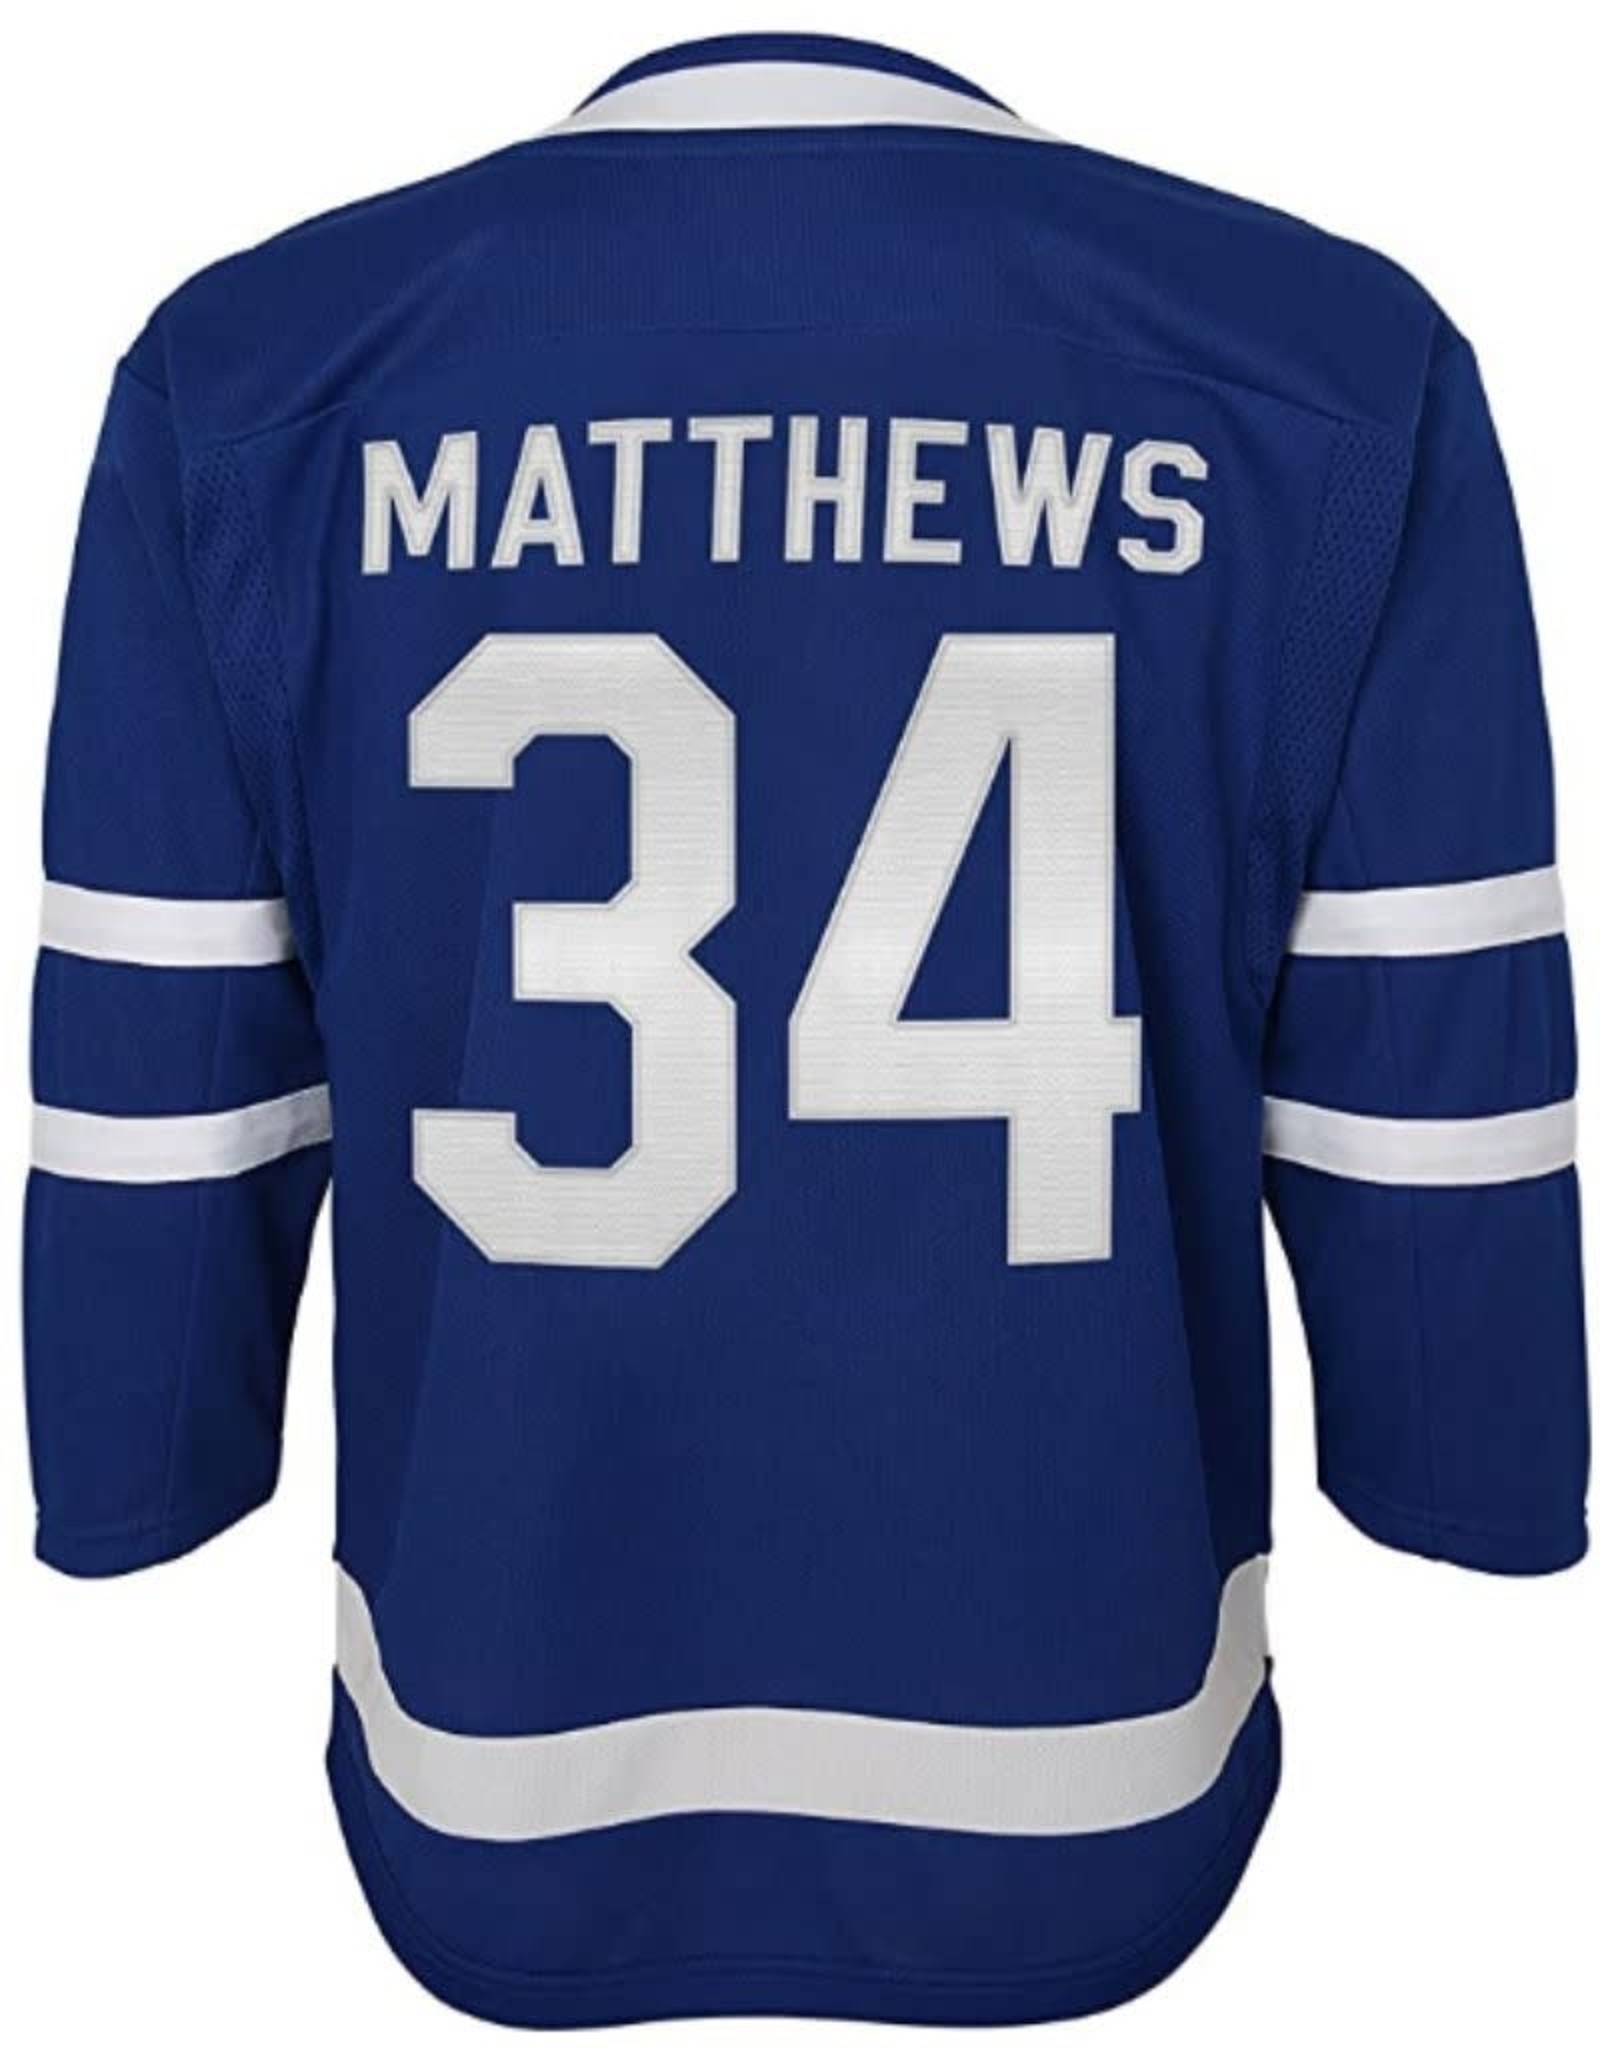 matthews youth jersey